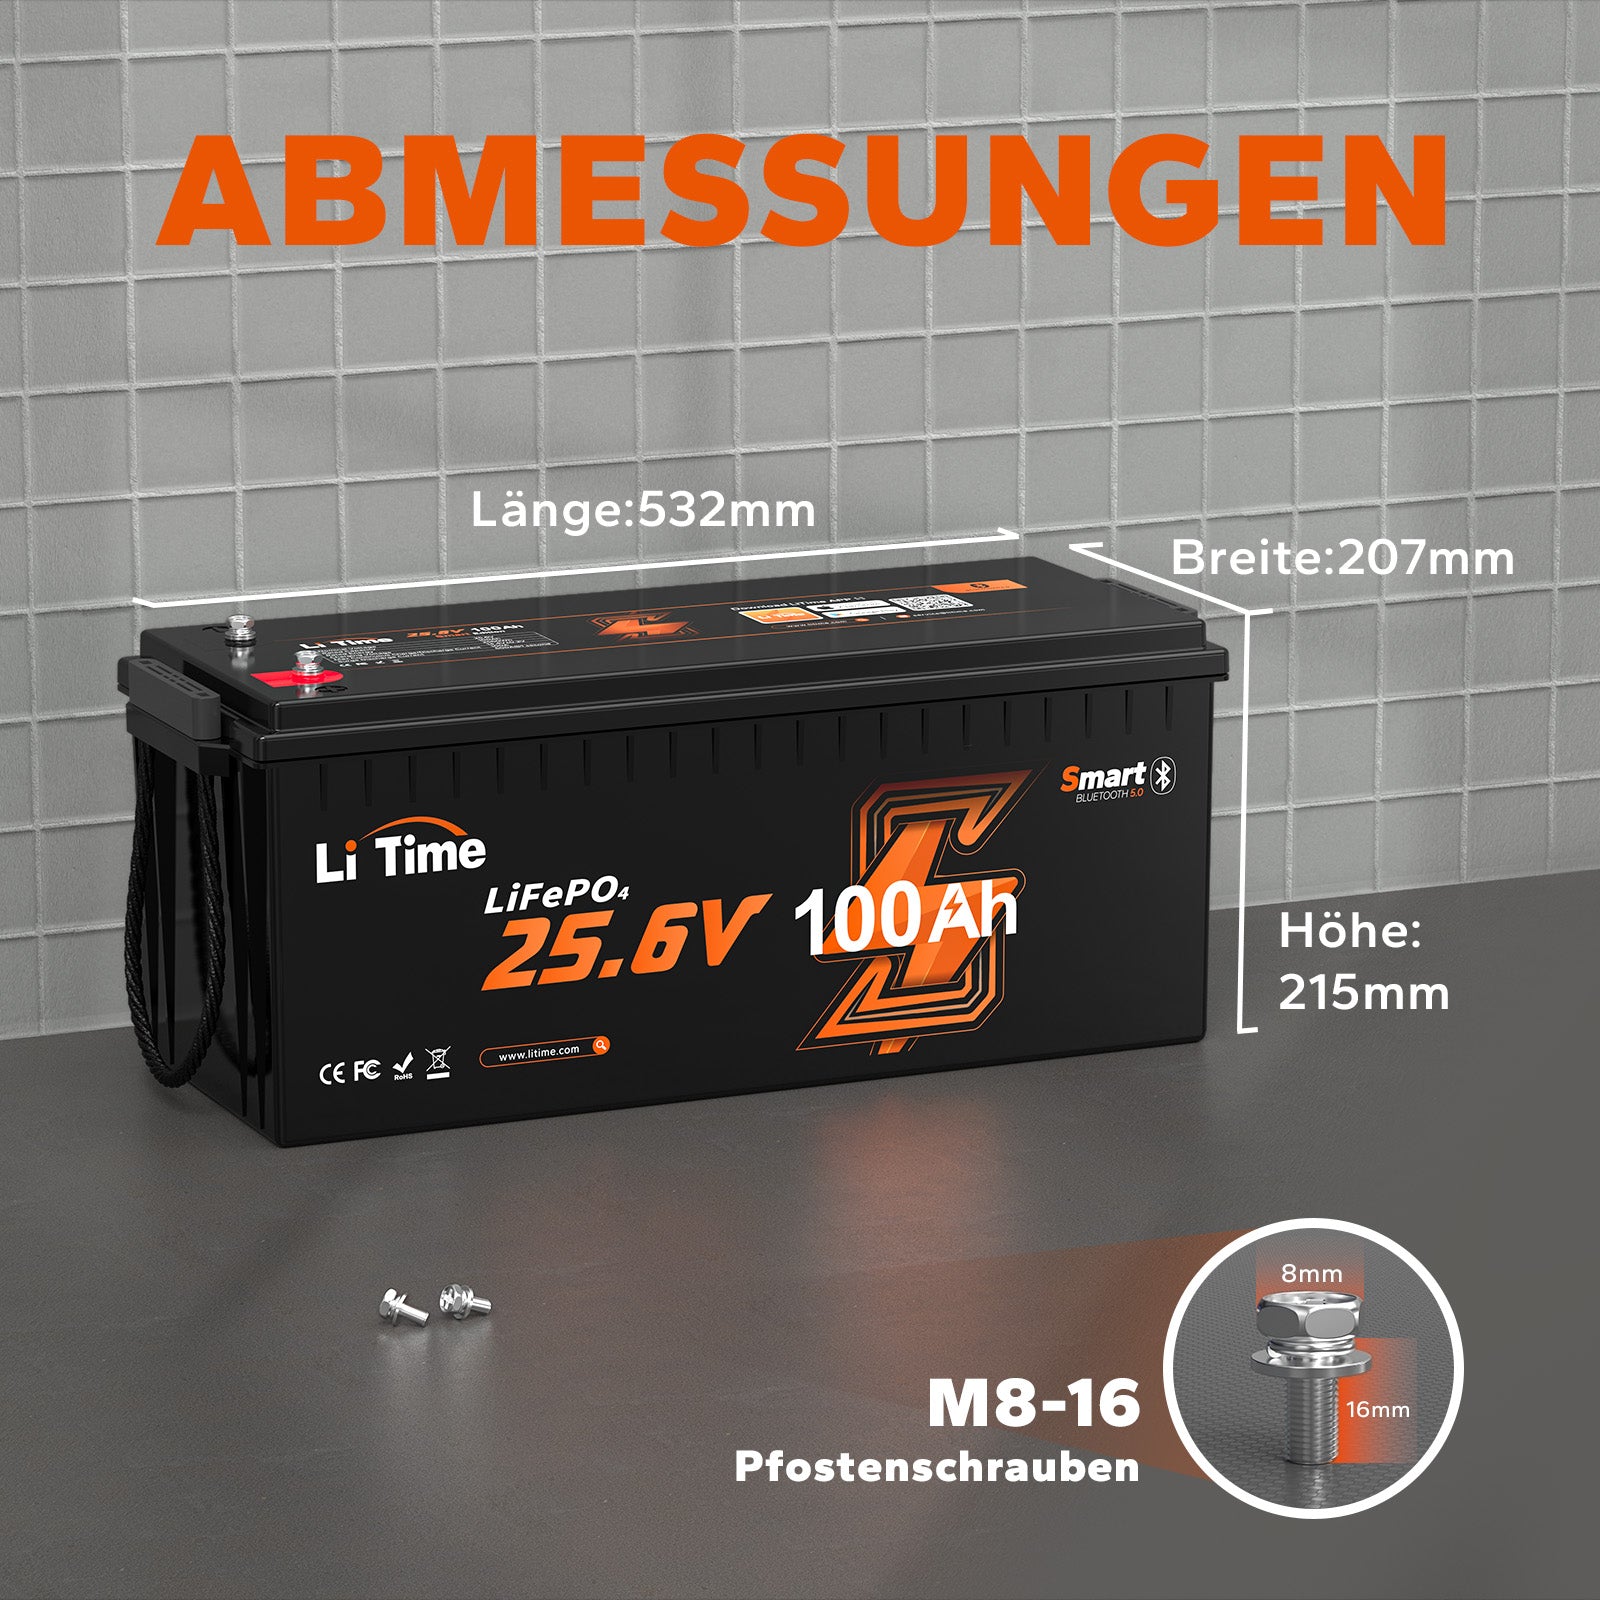 ⚡Prix anticipé : 599,99 €⚡LiTime 24V 100Ah LiFePO4 avec Bluetooth et Smart BMS, protection basse température